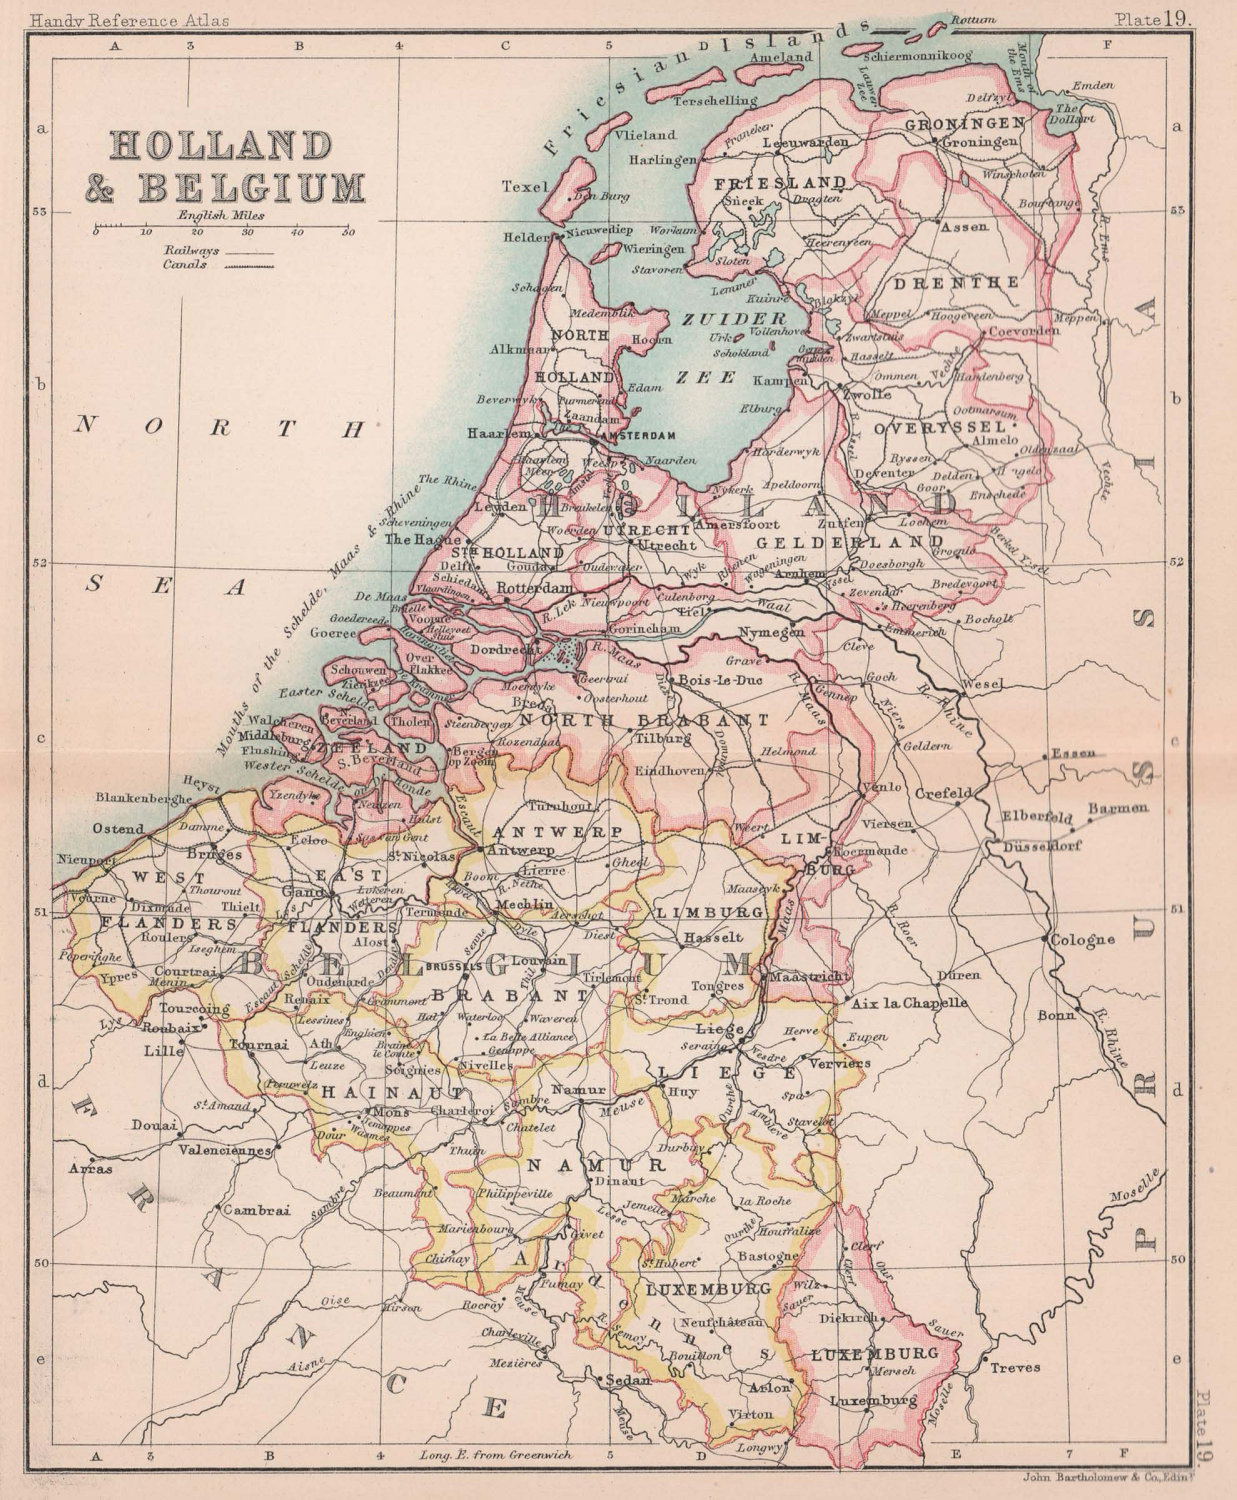 Holland & Belgium. Netherlands. BARTHOLOMEW 1888 old antique map plan chart